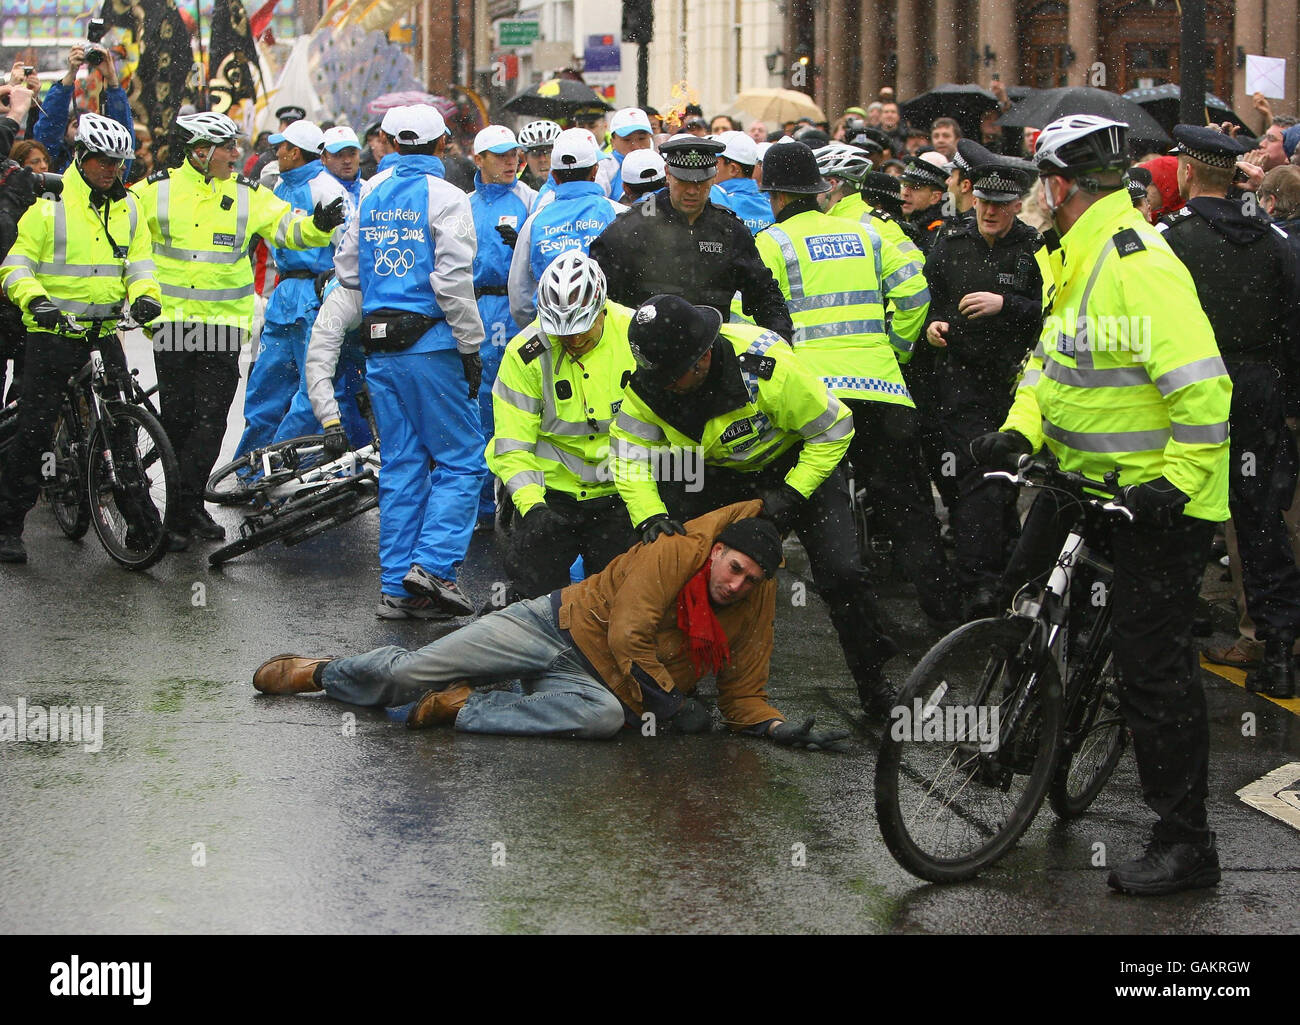 Ein Polizist ringt einen Demonstranten zu Boden, nachdem er während eines Teils seiner Reise durch London die olympische Fackel von der britischen Fernsehmoderatorin Konnie Huq (nicht gesehen) auf dem Weg zur Beleuchtung des olympischen Kessels in der O2 Arena in Greenwich gepackt und versucht hat, sie mit sich zu nehmen. Stockfoto